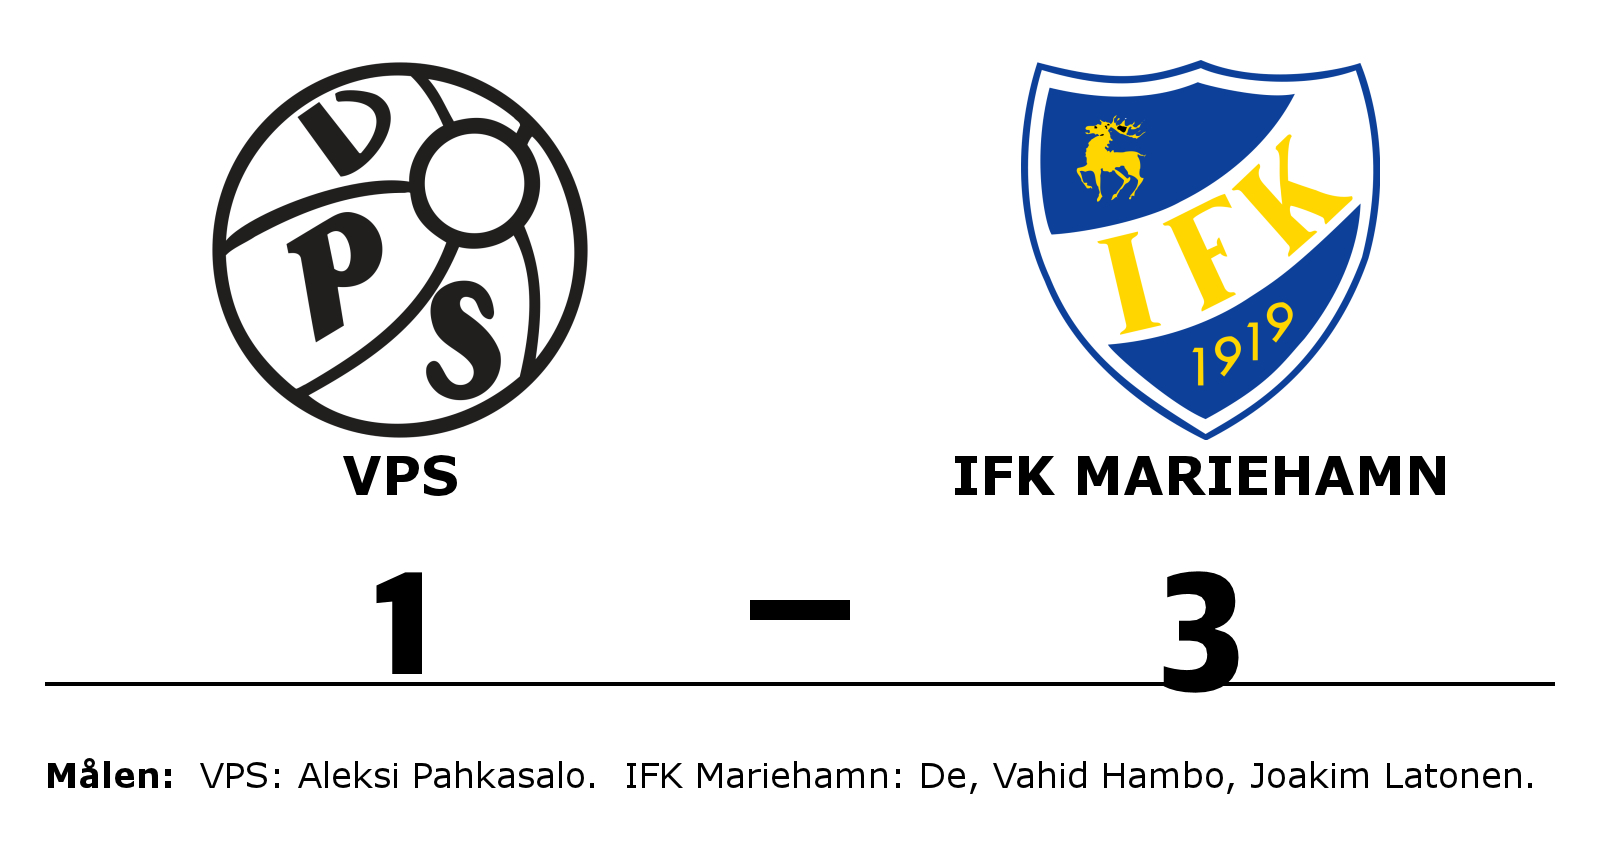 VPS förlorade mot IFK Mariehamn